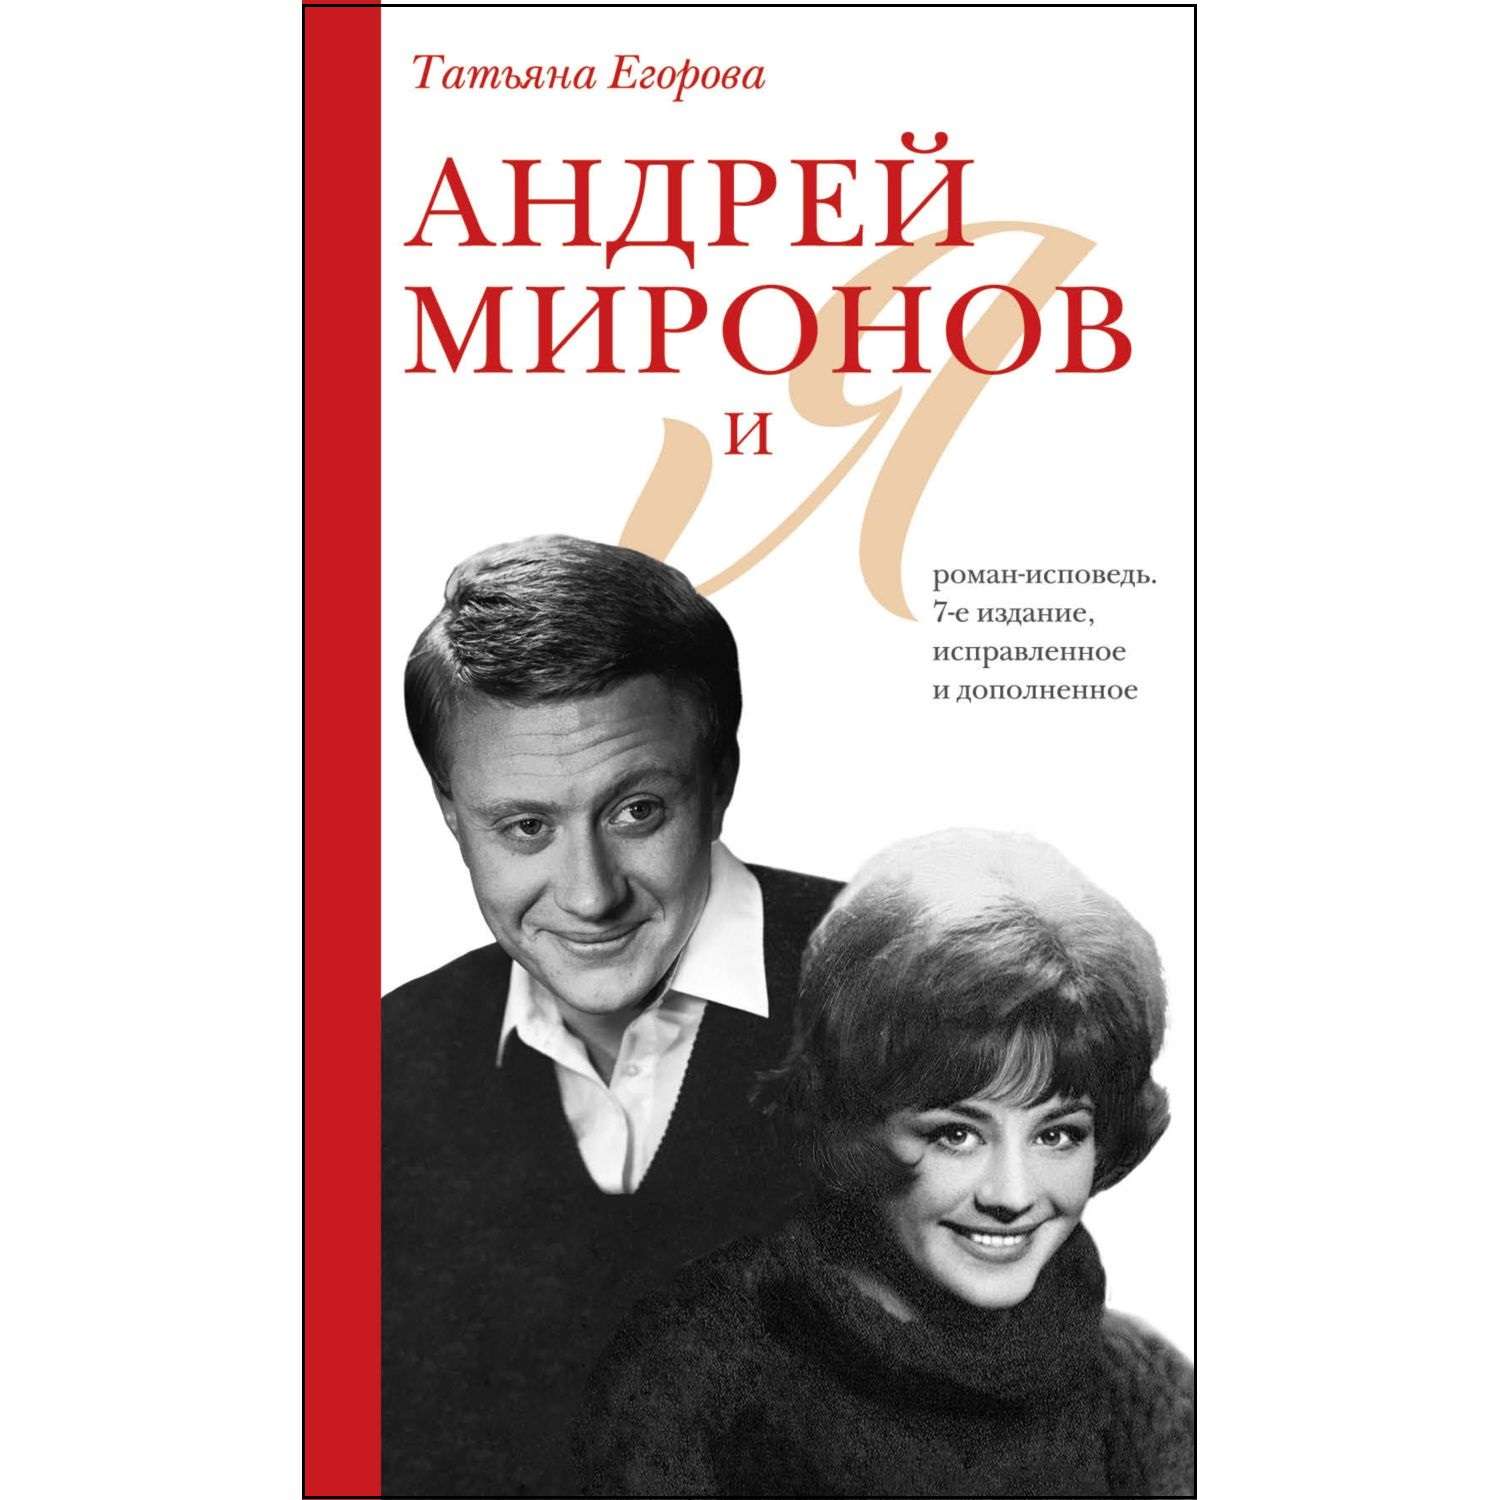 Книга Эксмо Андрей Миронов и я роман исповедь 7е издание исправленное и дополненное - фото 1